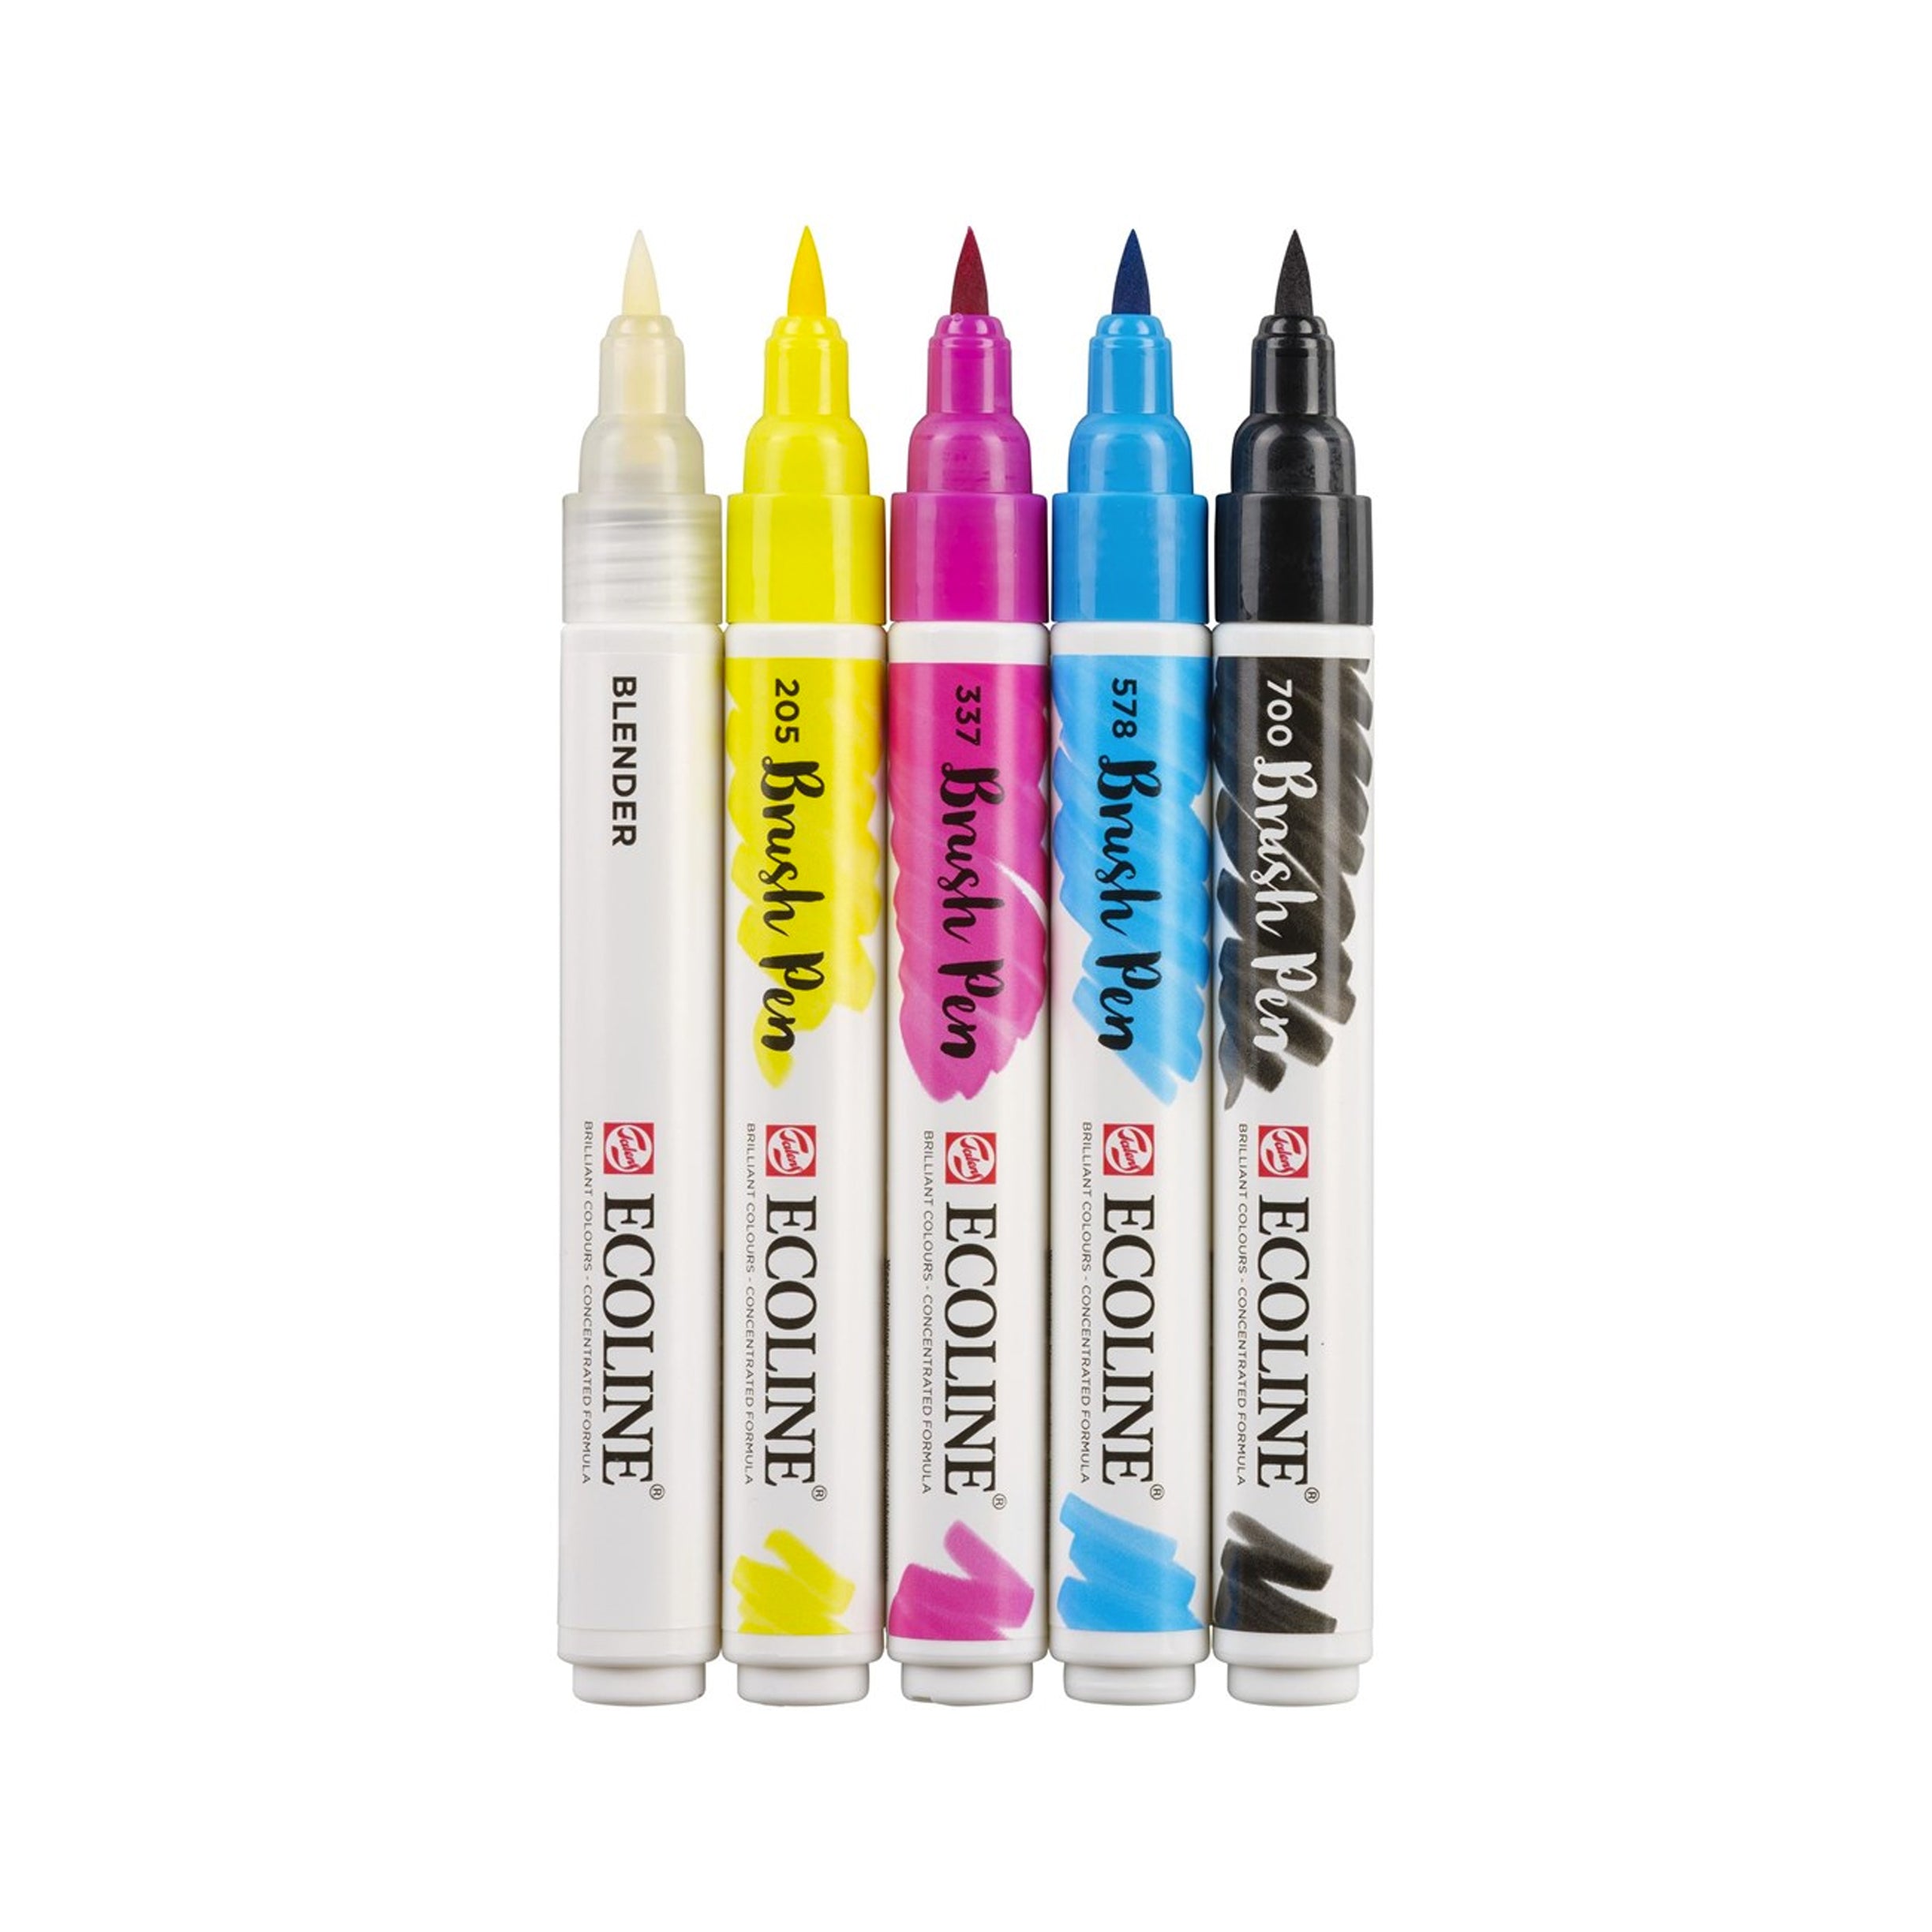 Royal Talens Ecoline Watercolor Brush Pen - 30 Color Set